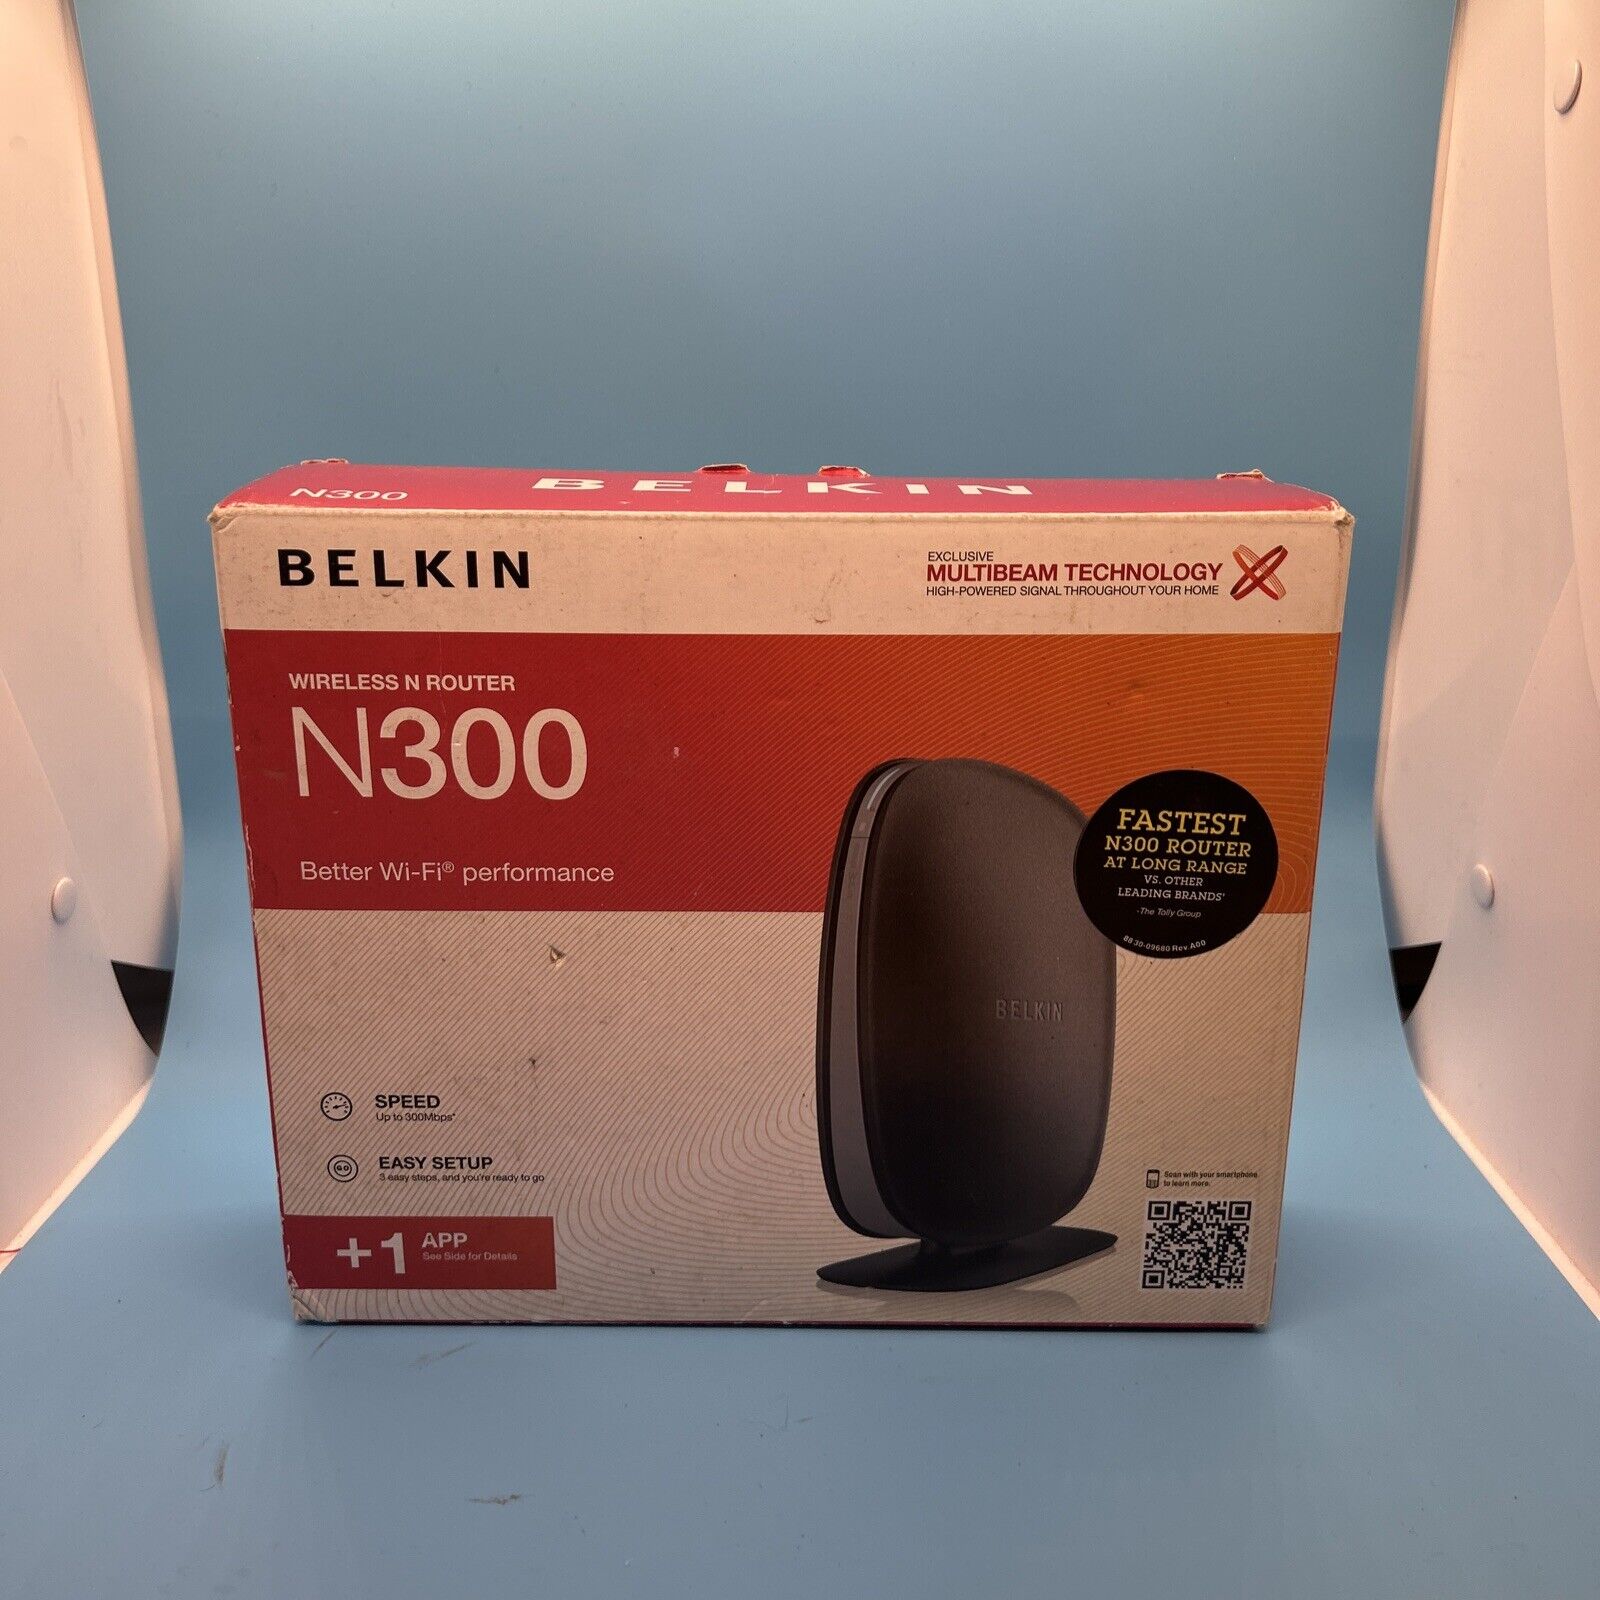 BELKIN N300 Wireless N Router F9K1002 ver. 104A